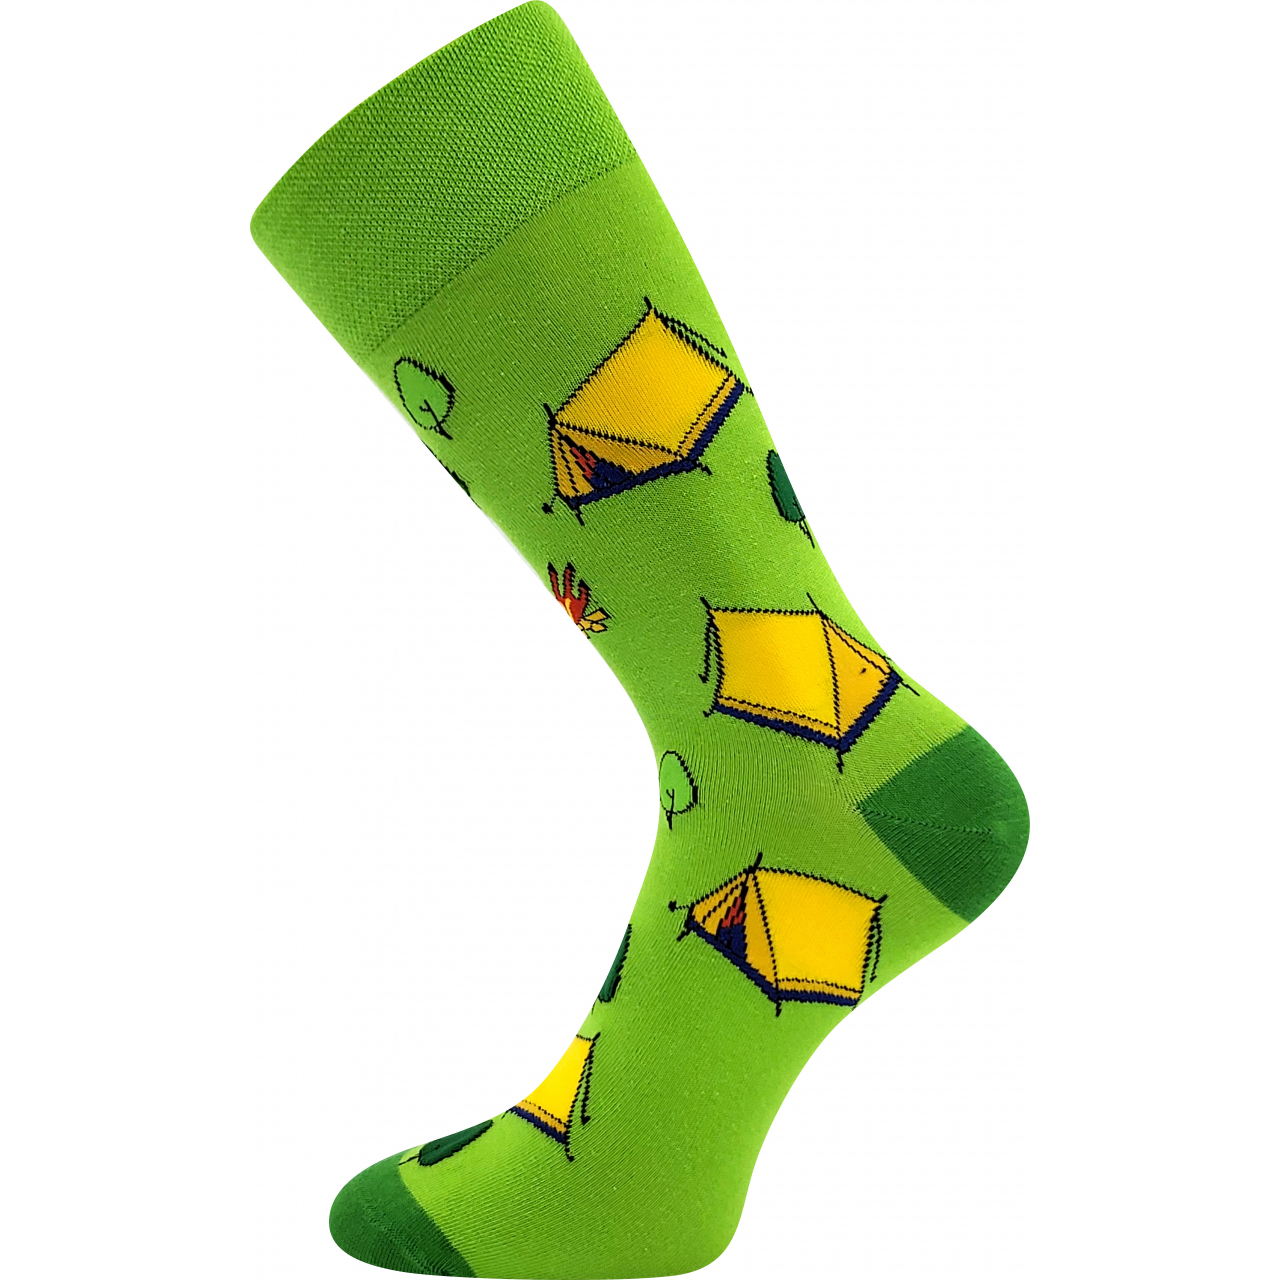 Ponožky společenské unisex Lonka Twidor Kemping - zelené-žluté, 39-42